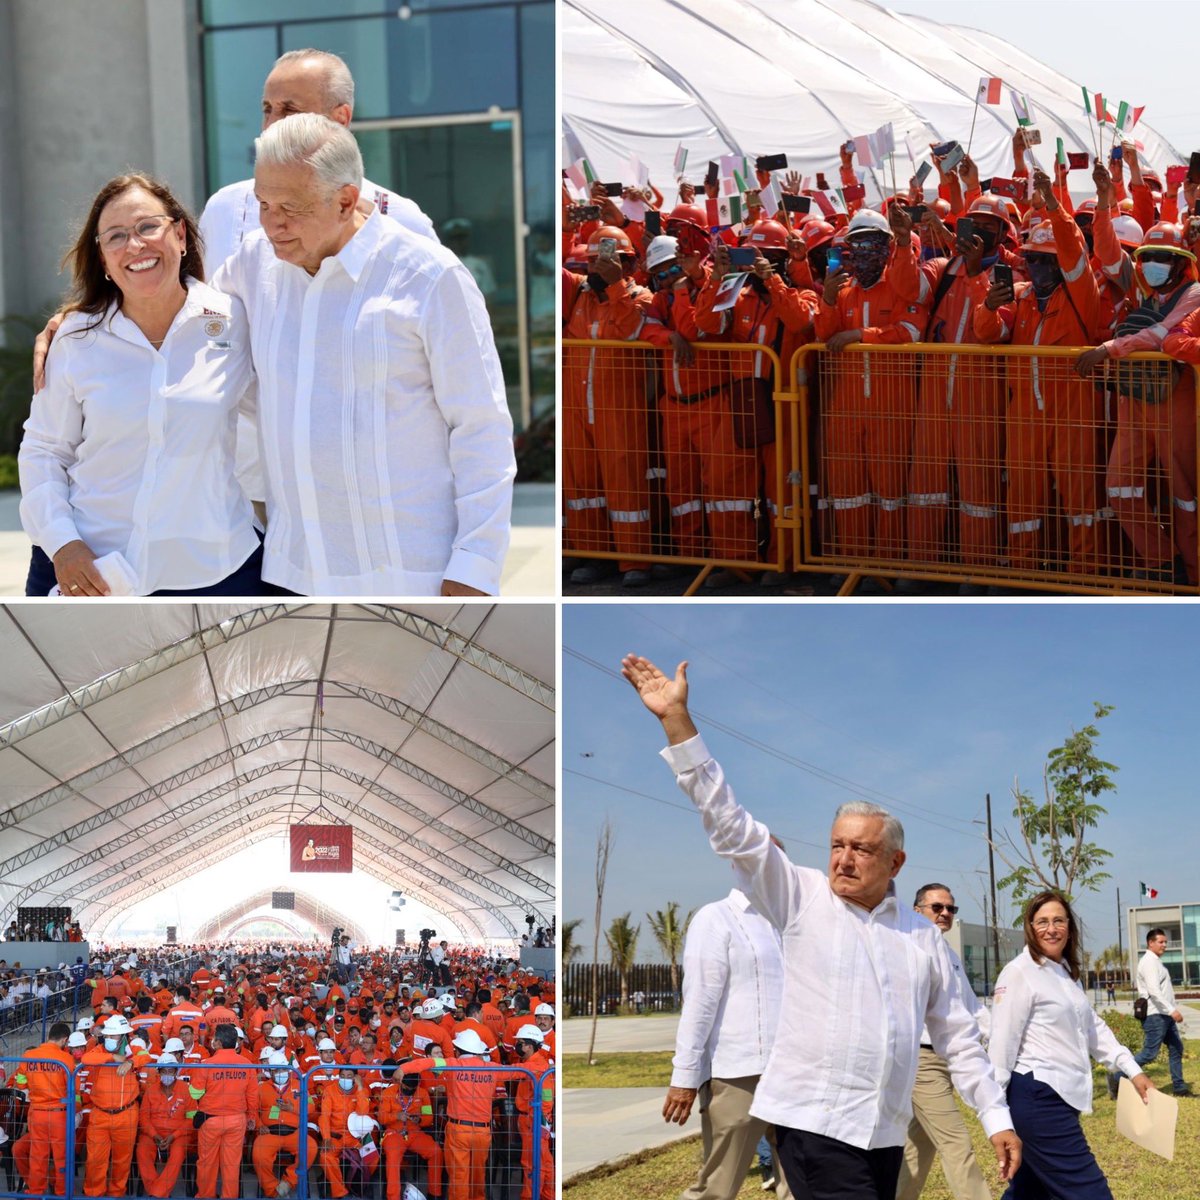 1 de mayo en la refinería Olmeca en #DosBocas Paraíso, Tabasco. 
Un reconocimiento a los miles de trabajadores que hacen posible este proyecto. 
Desde acá felicitamos a todos los trabajadores de México. 🇲🇽
#DiaDelTrabajo